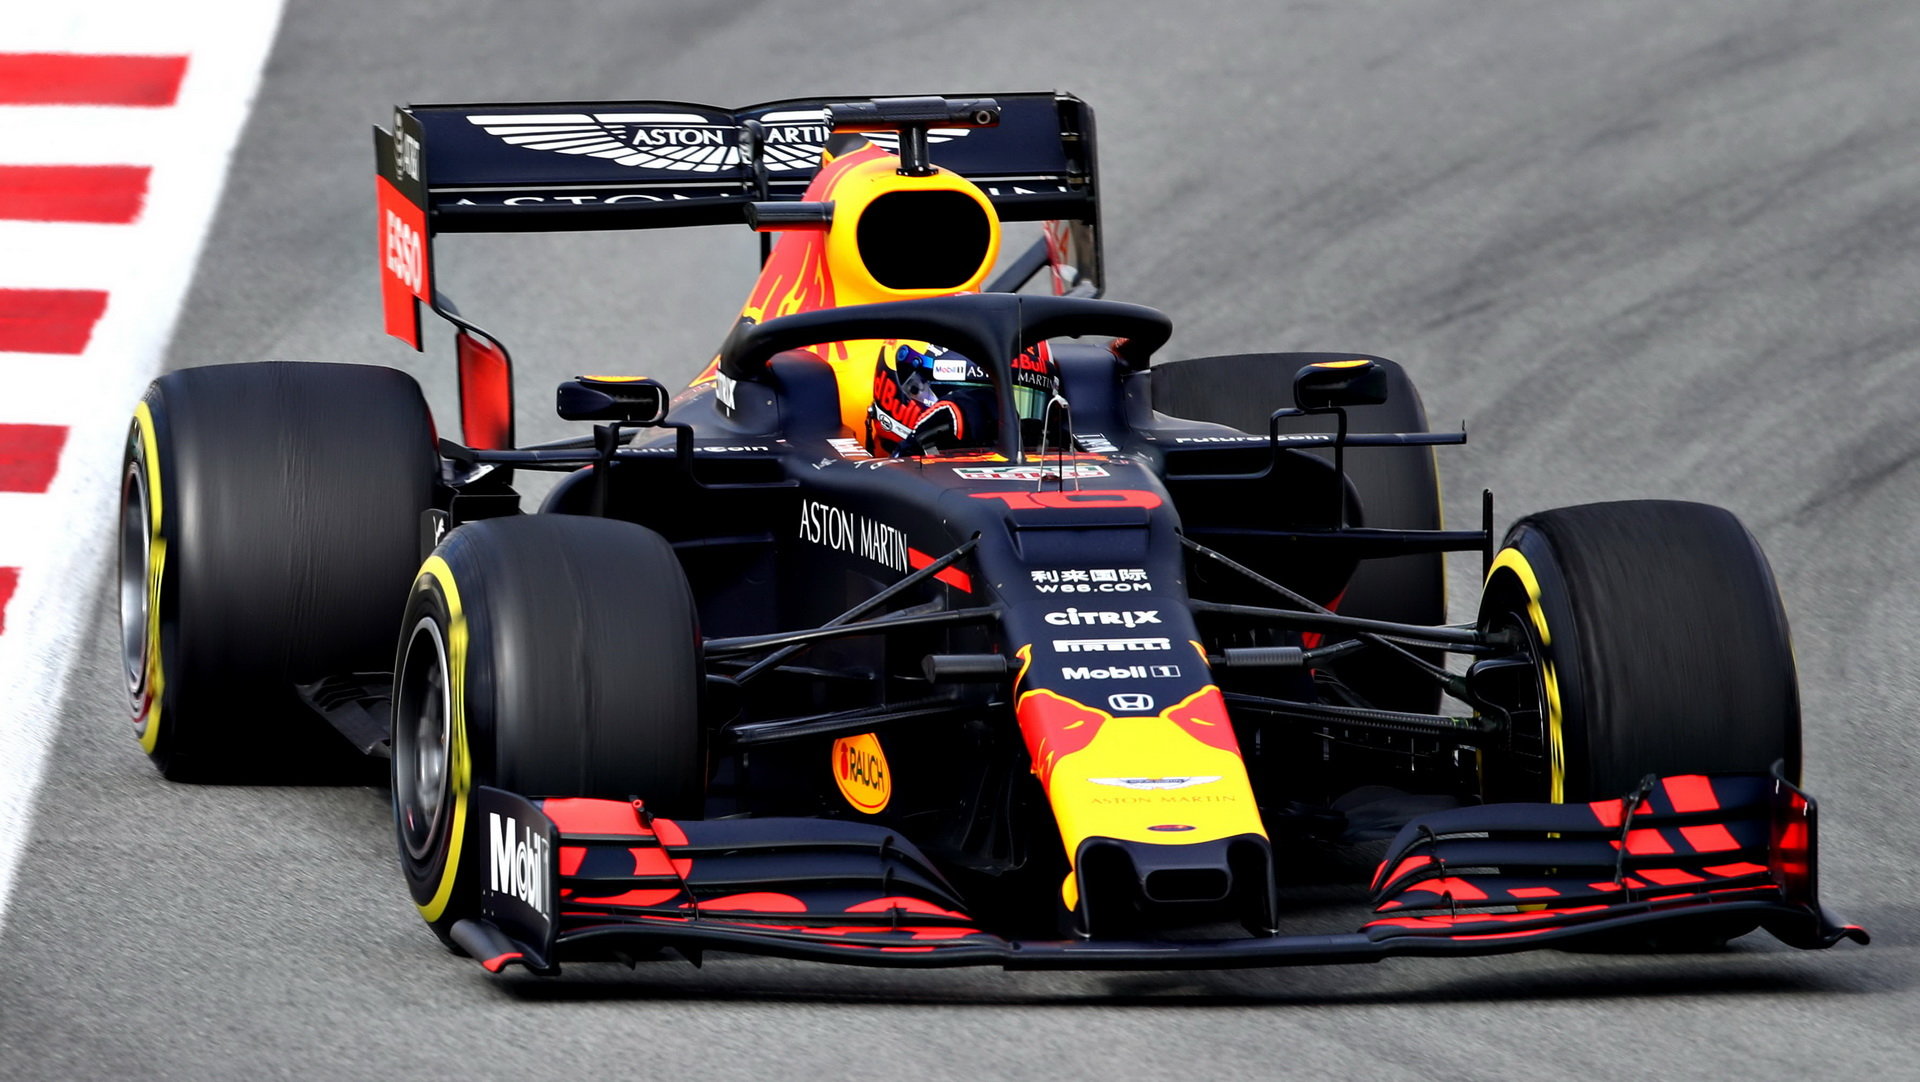 Pierre Gasly v novém voze Red Bull RB15 - Honda při druhém dni testů v Barceloně